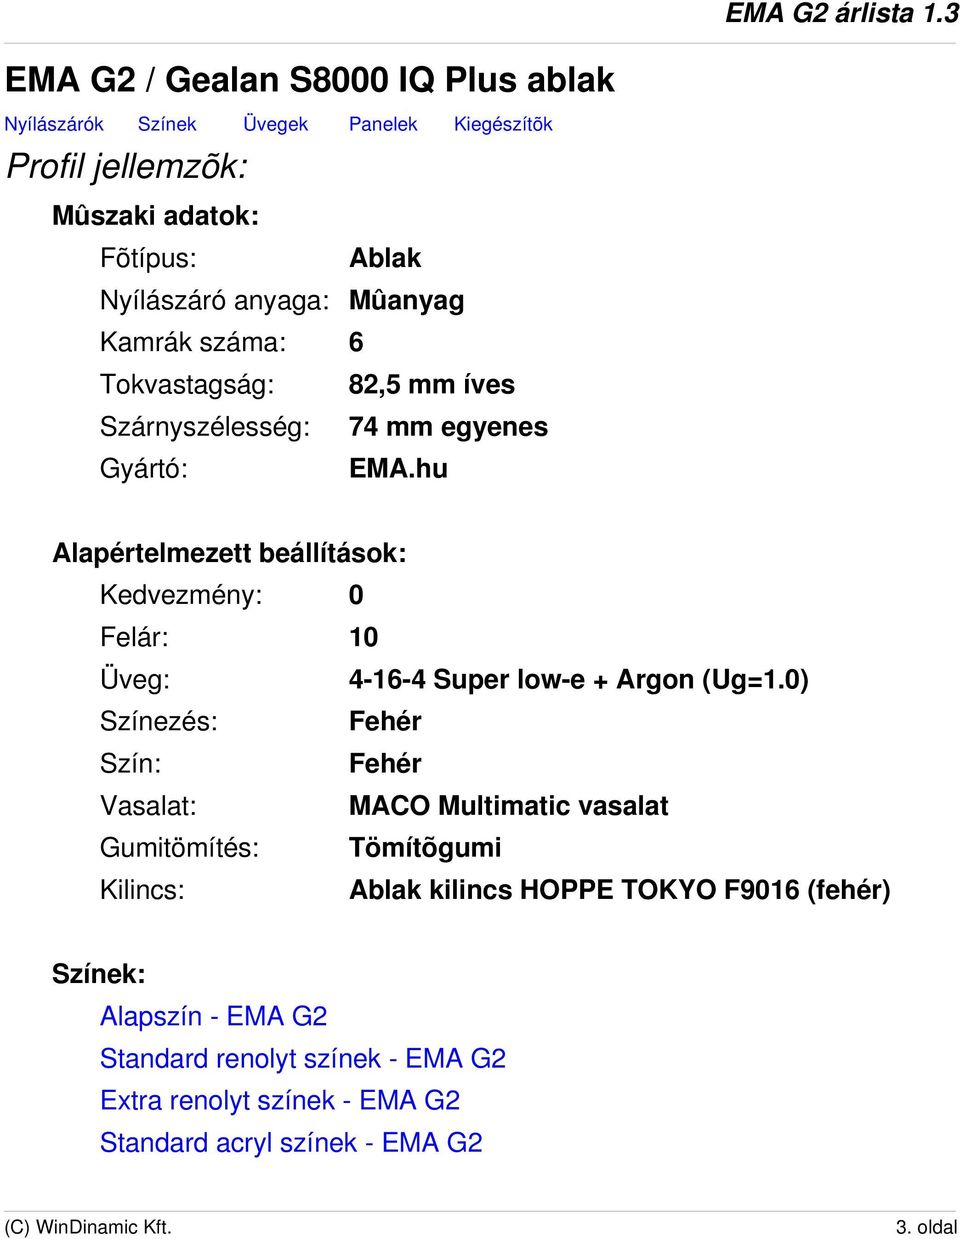 EMA G2 árlista 1.3. Árlista jellemzõk: Profilok: EMA G2 árlista 1.3.  Verzió: 1.3 Pénznem: Ft Nyelv: Magyar - PDF Free Download